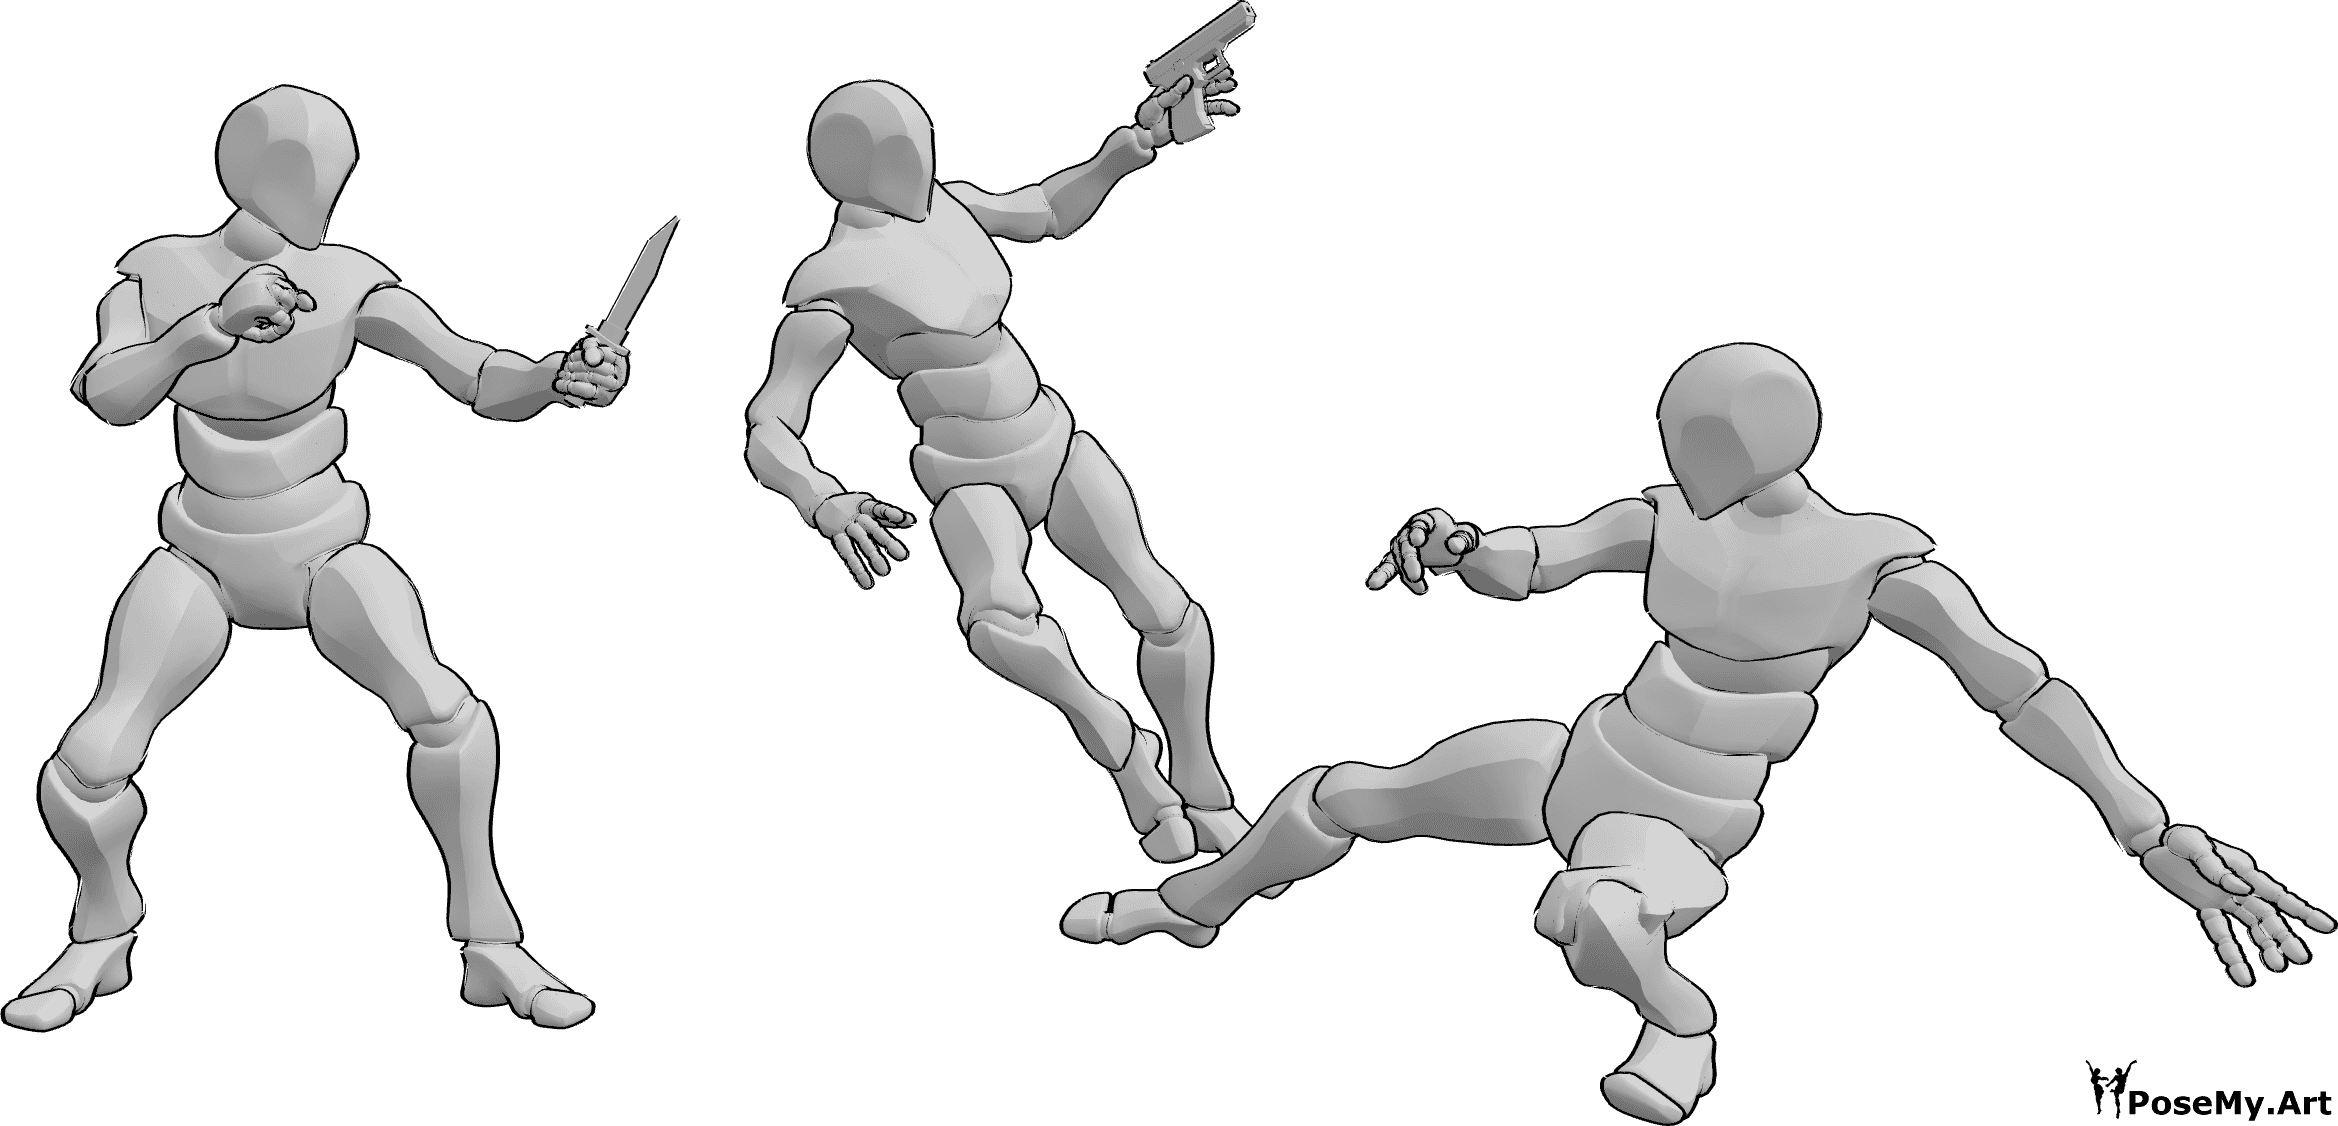 Referencia de poses- Pistola daga pose de combate - Tres varones se pelean, empuñan una pistola y un puñal, uno de ellos cae de una patada